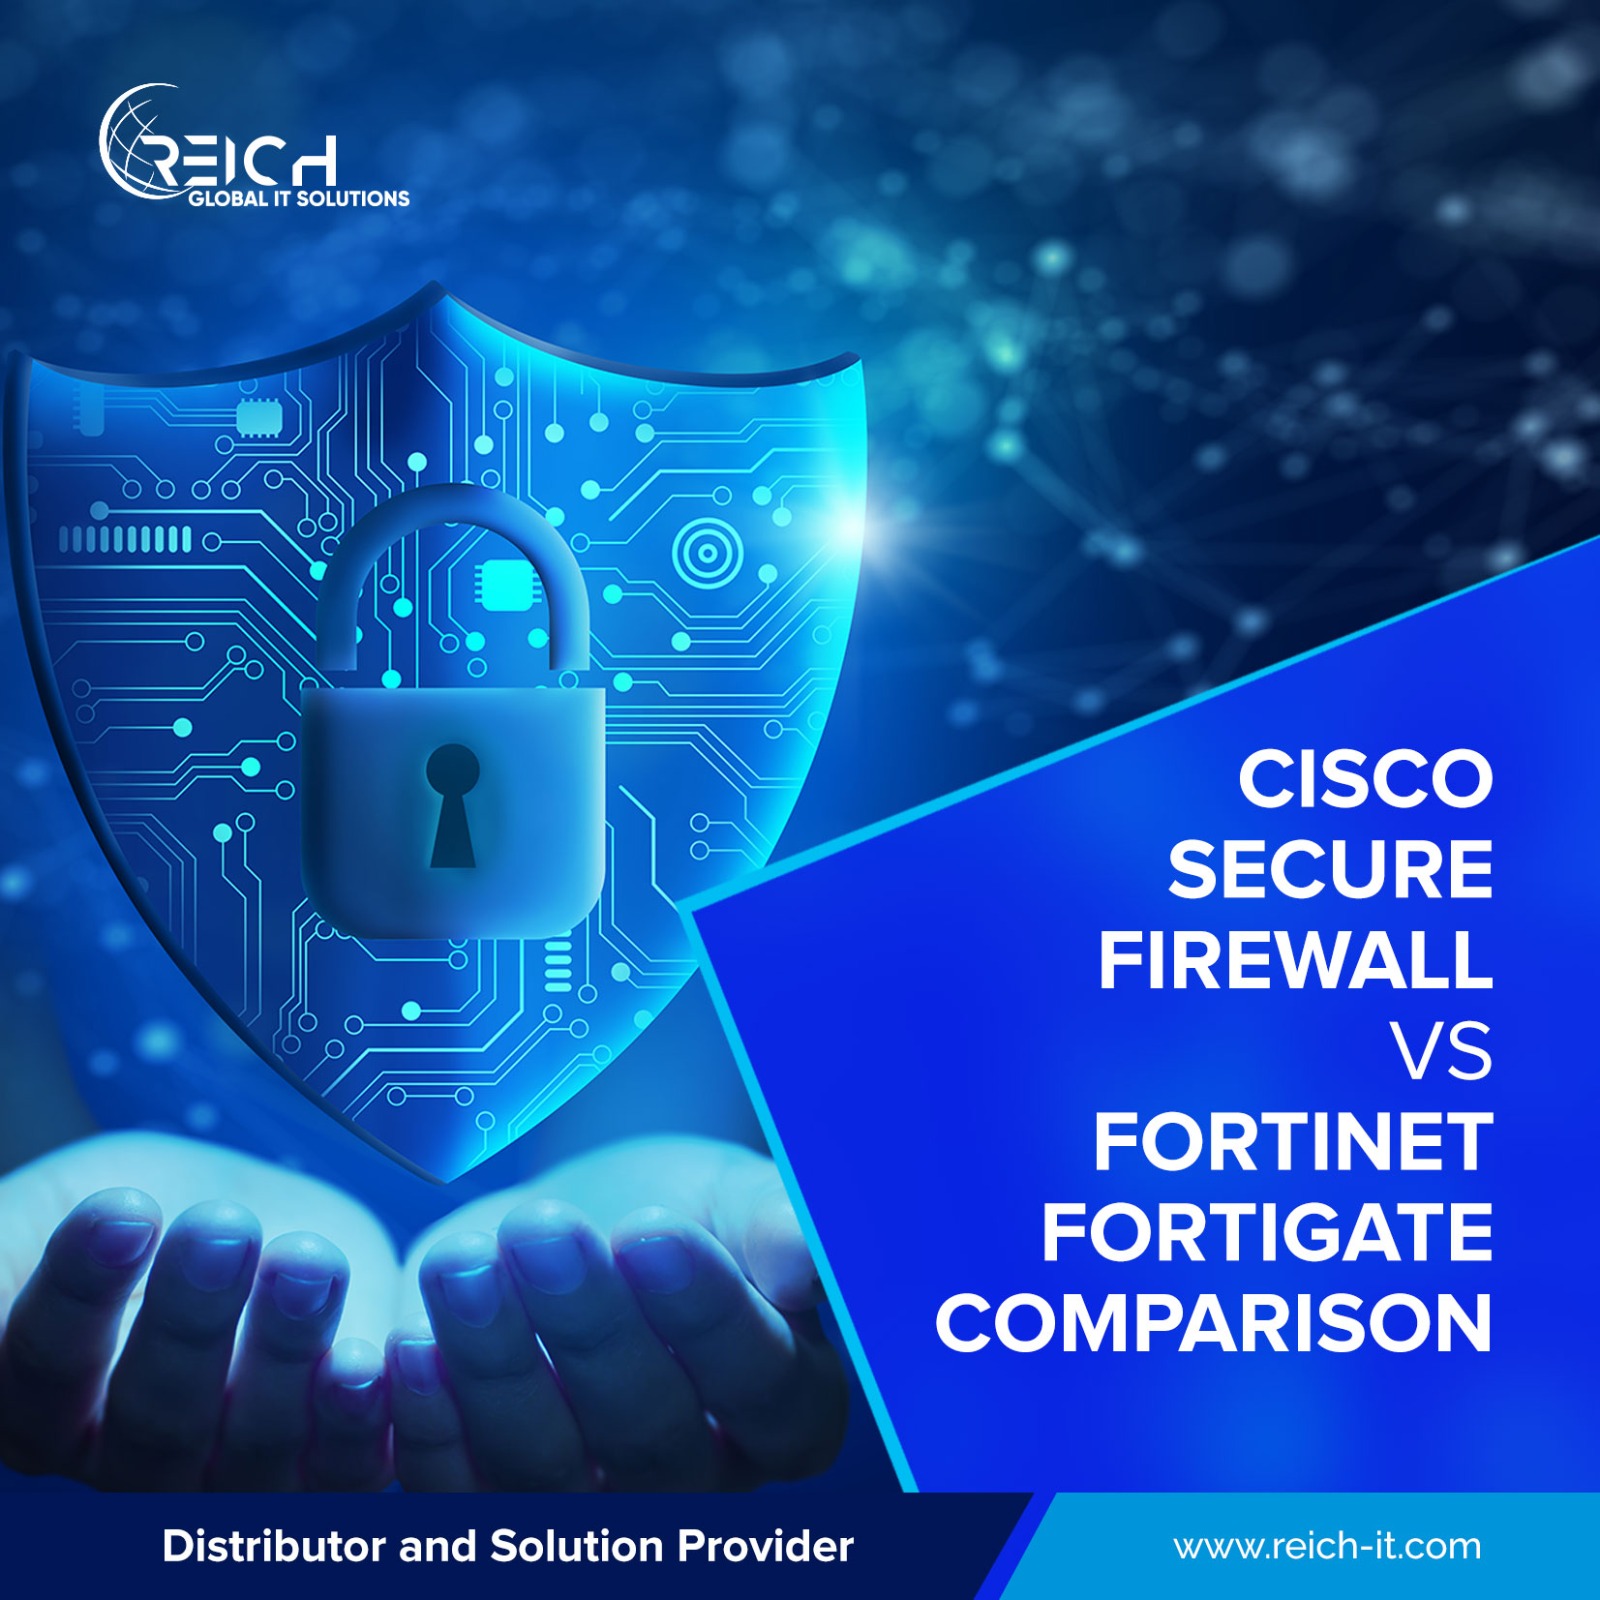 Cisco Secure Firewall vs Fortinet FortiGate comparison